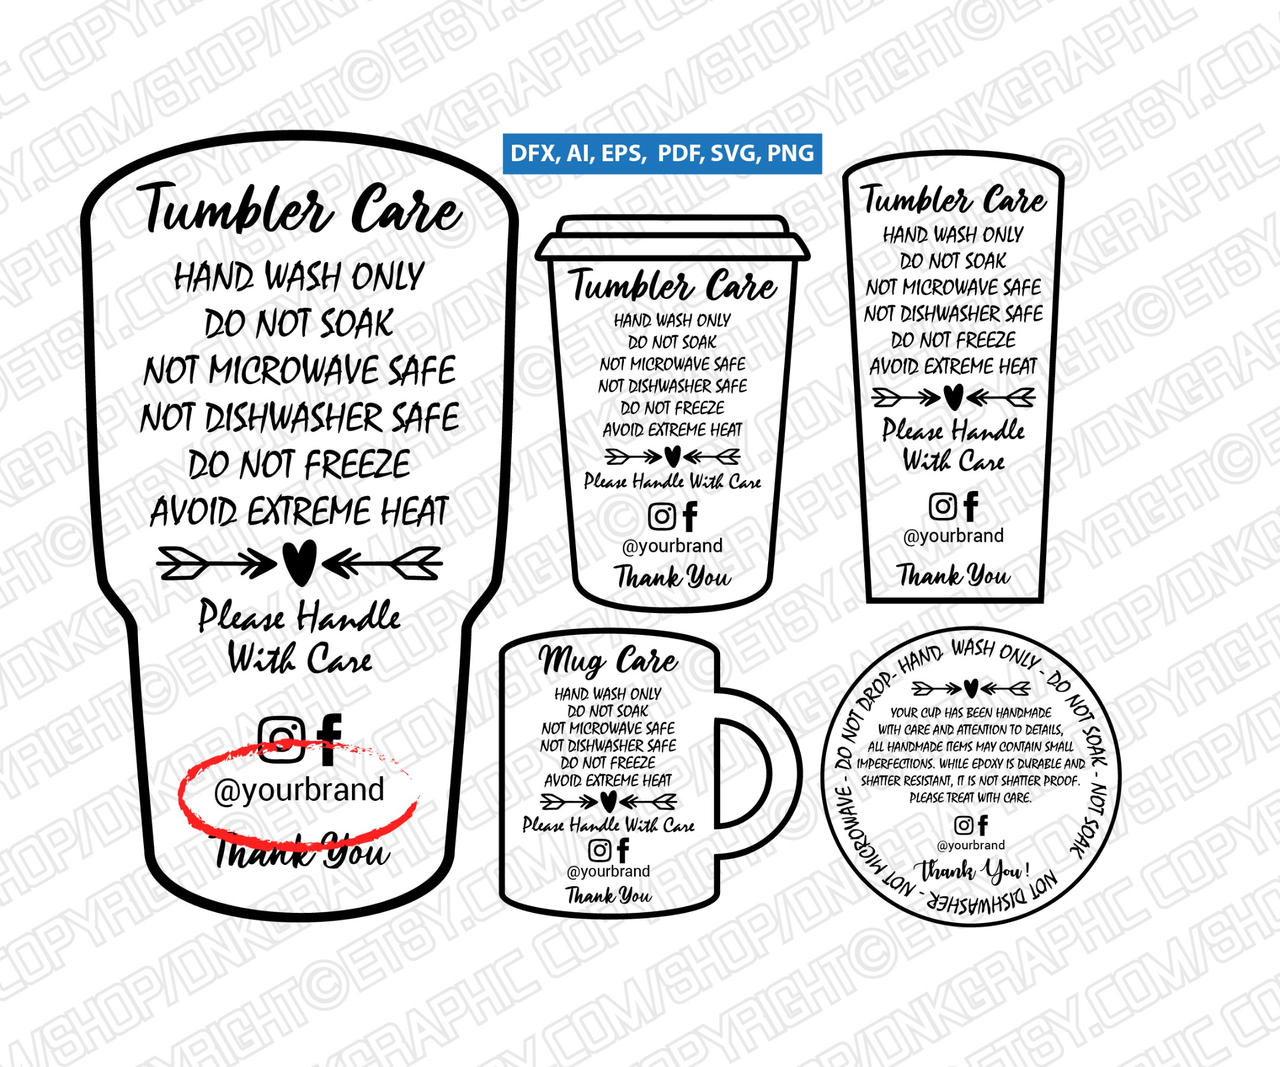 Mug Care Instruction 